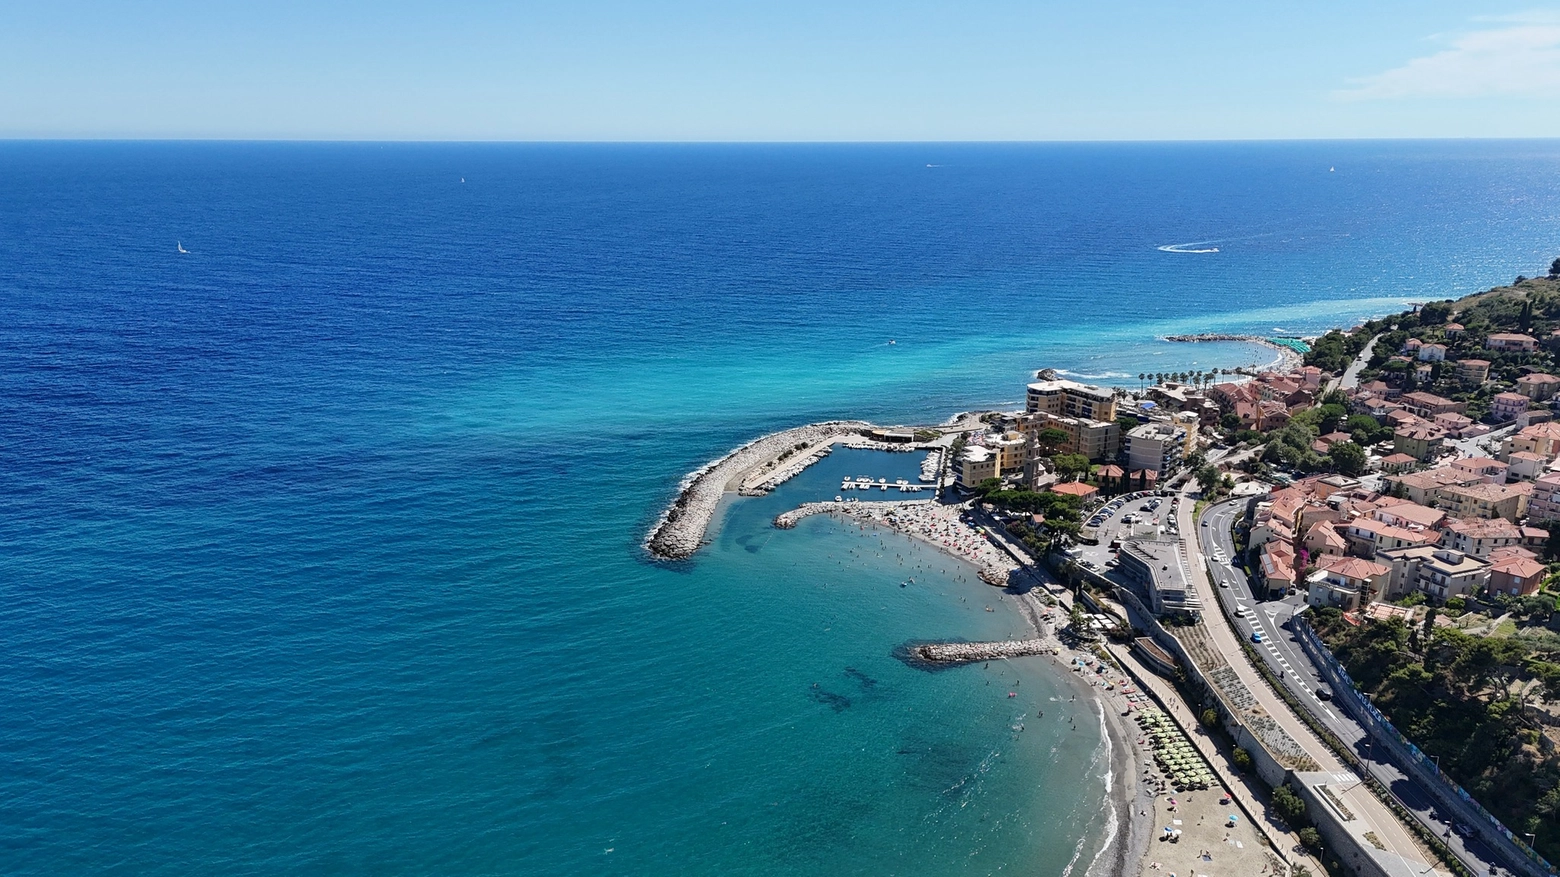 La spiaggia di San Lorenzo al Mare, nel territorio comunale di Imperia, offre paesaggi da sogno